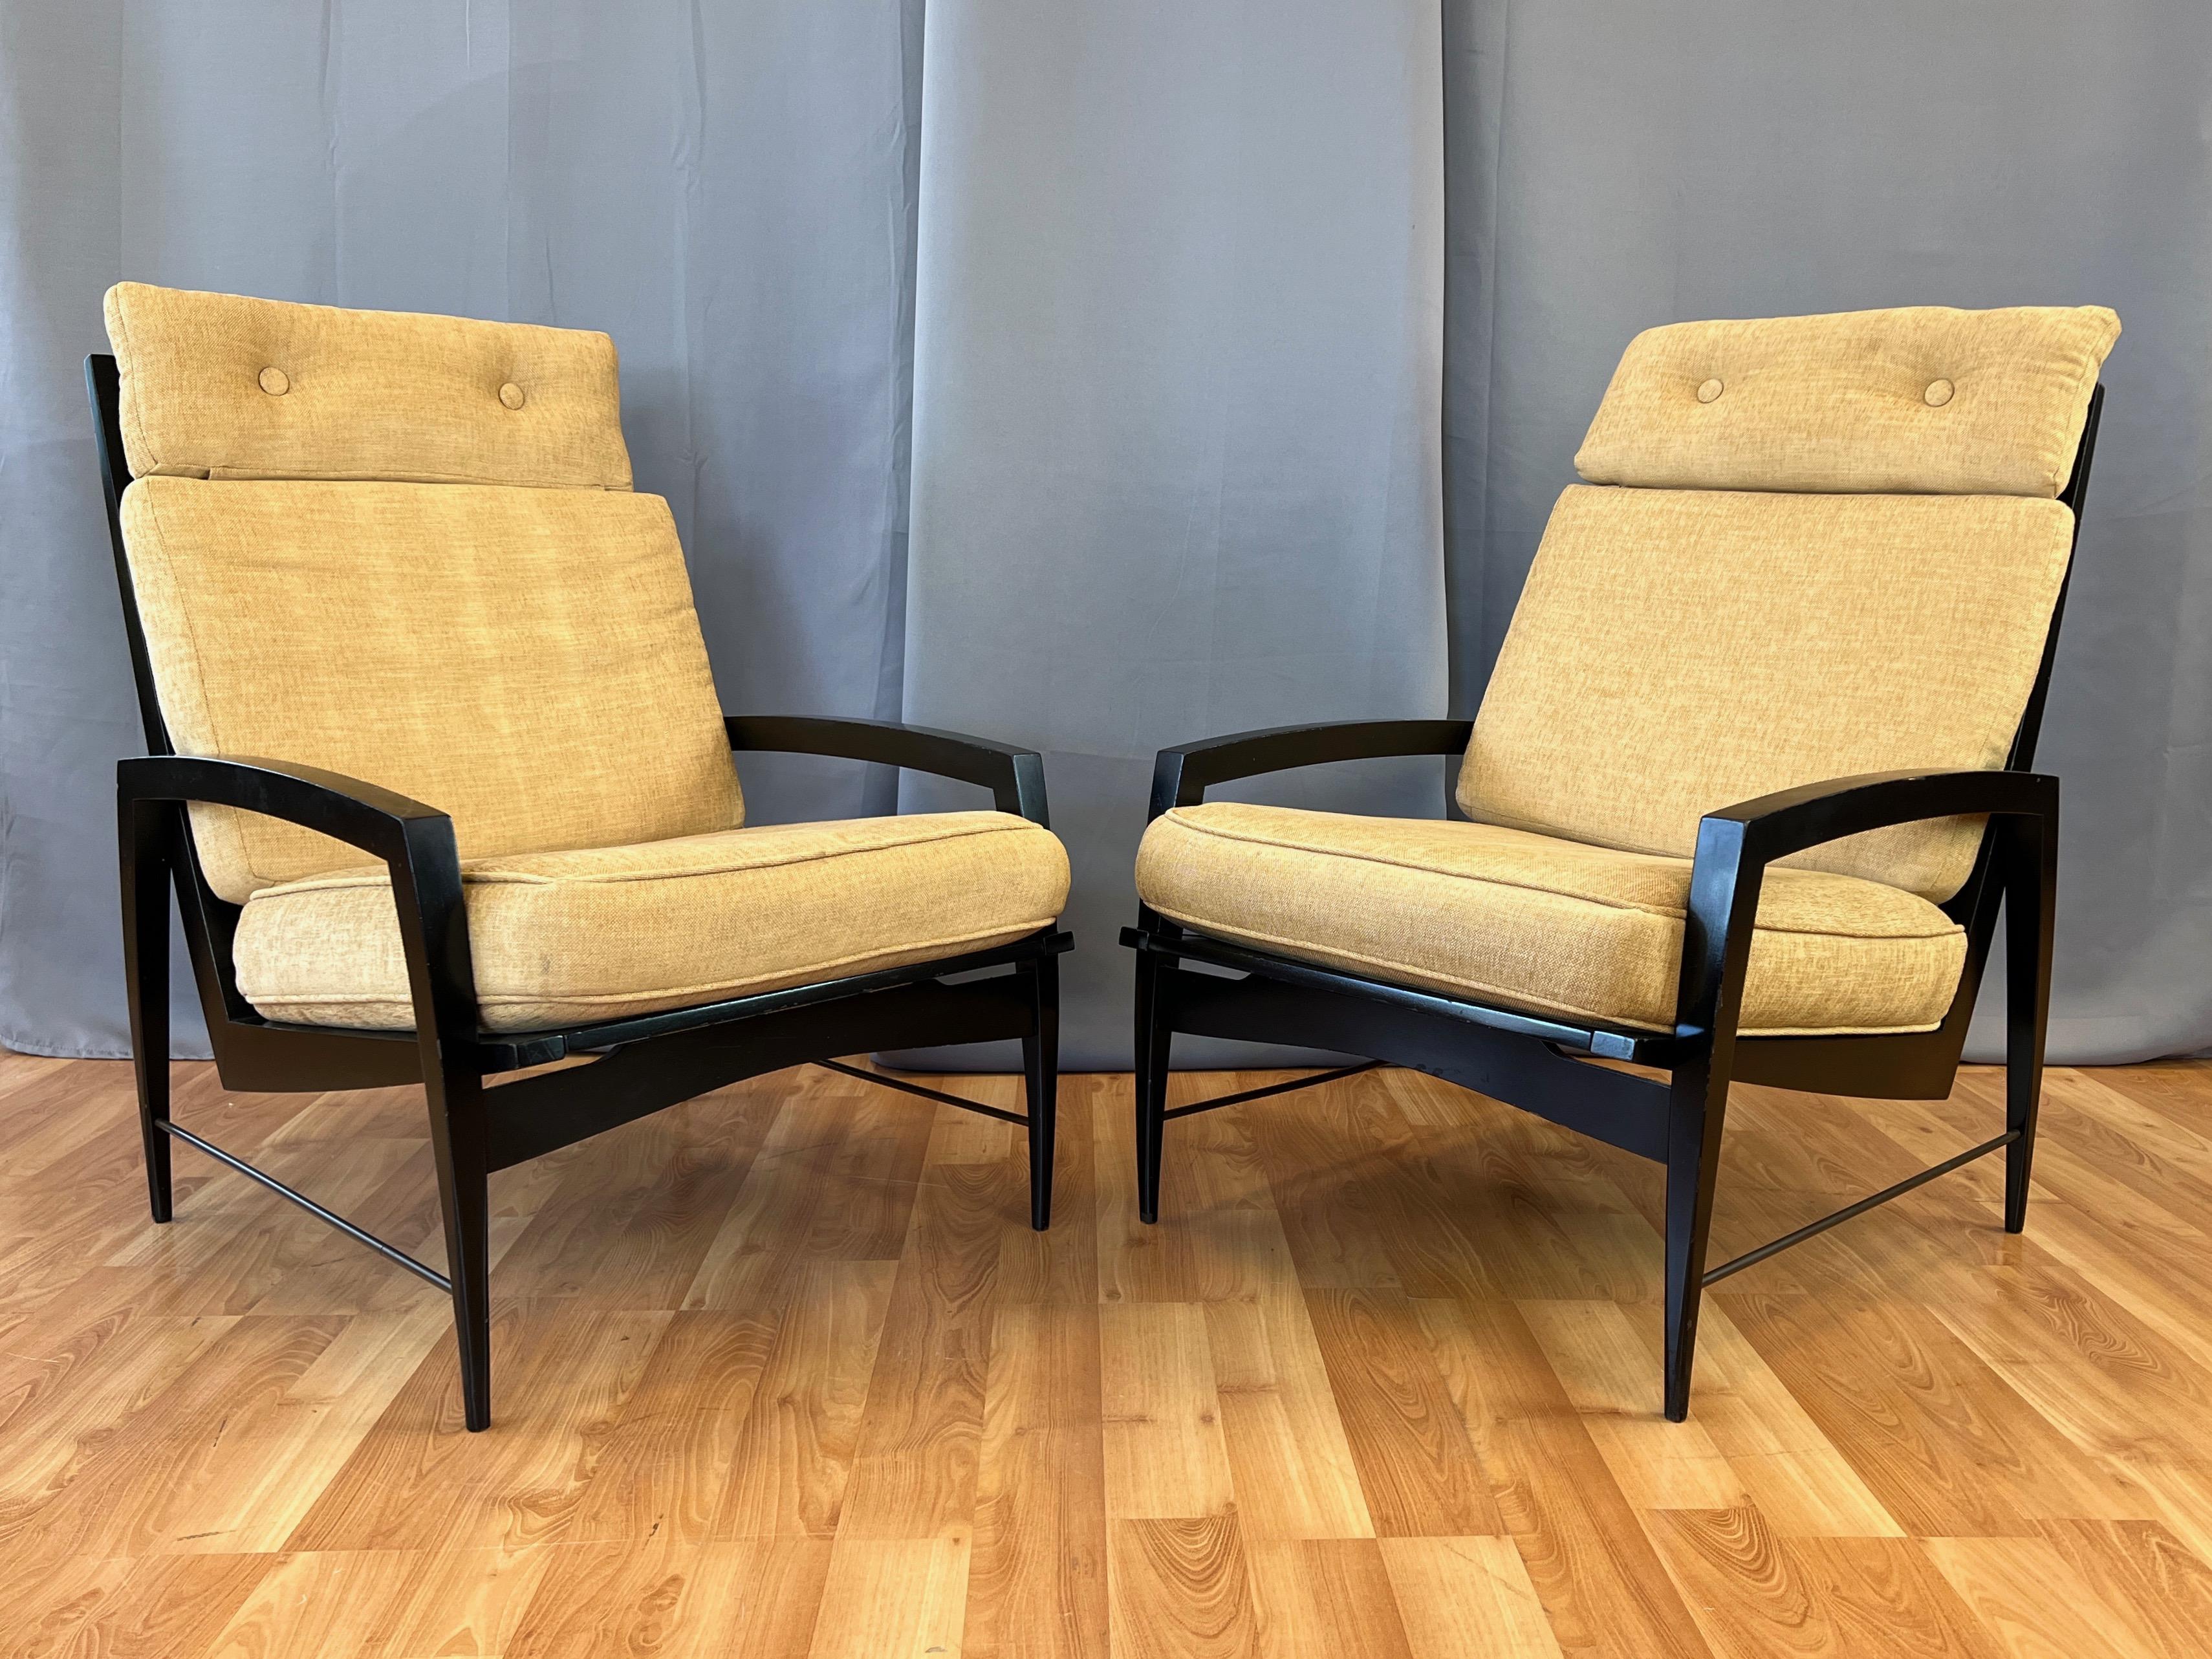  Seltenes Paar schwarz lackierter, gepolsterter Sessel mit hoher Rückenlehne aus den 1950er Jahren von Dan Johnson für Selig.

Elegant verjüngte, gegenläufige Kurven mit einer unverwechselbaren, zeitlosen Ästhetik der Jahrhundertmitte. Die hohe